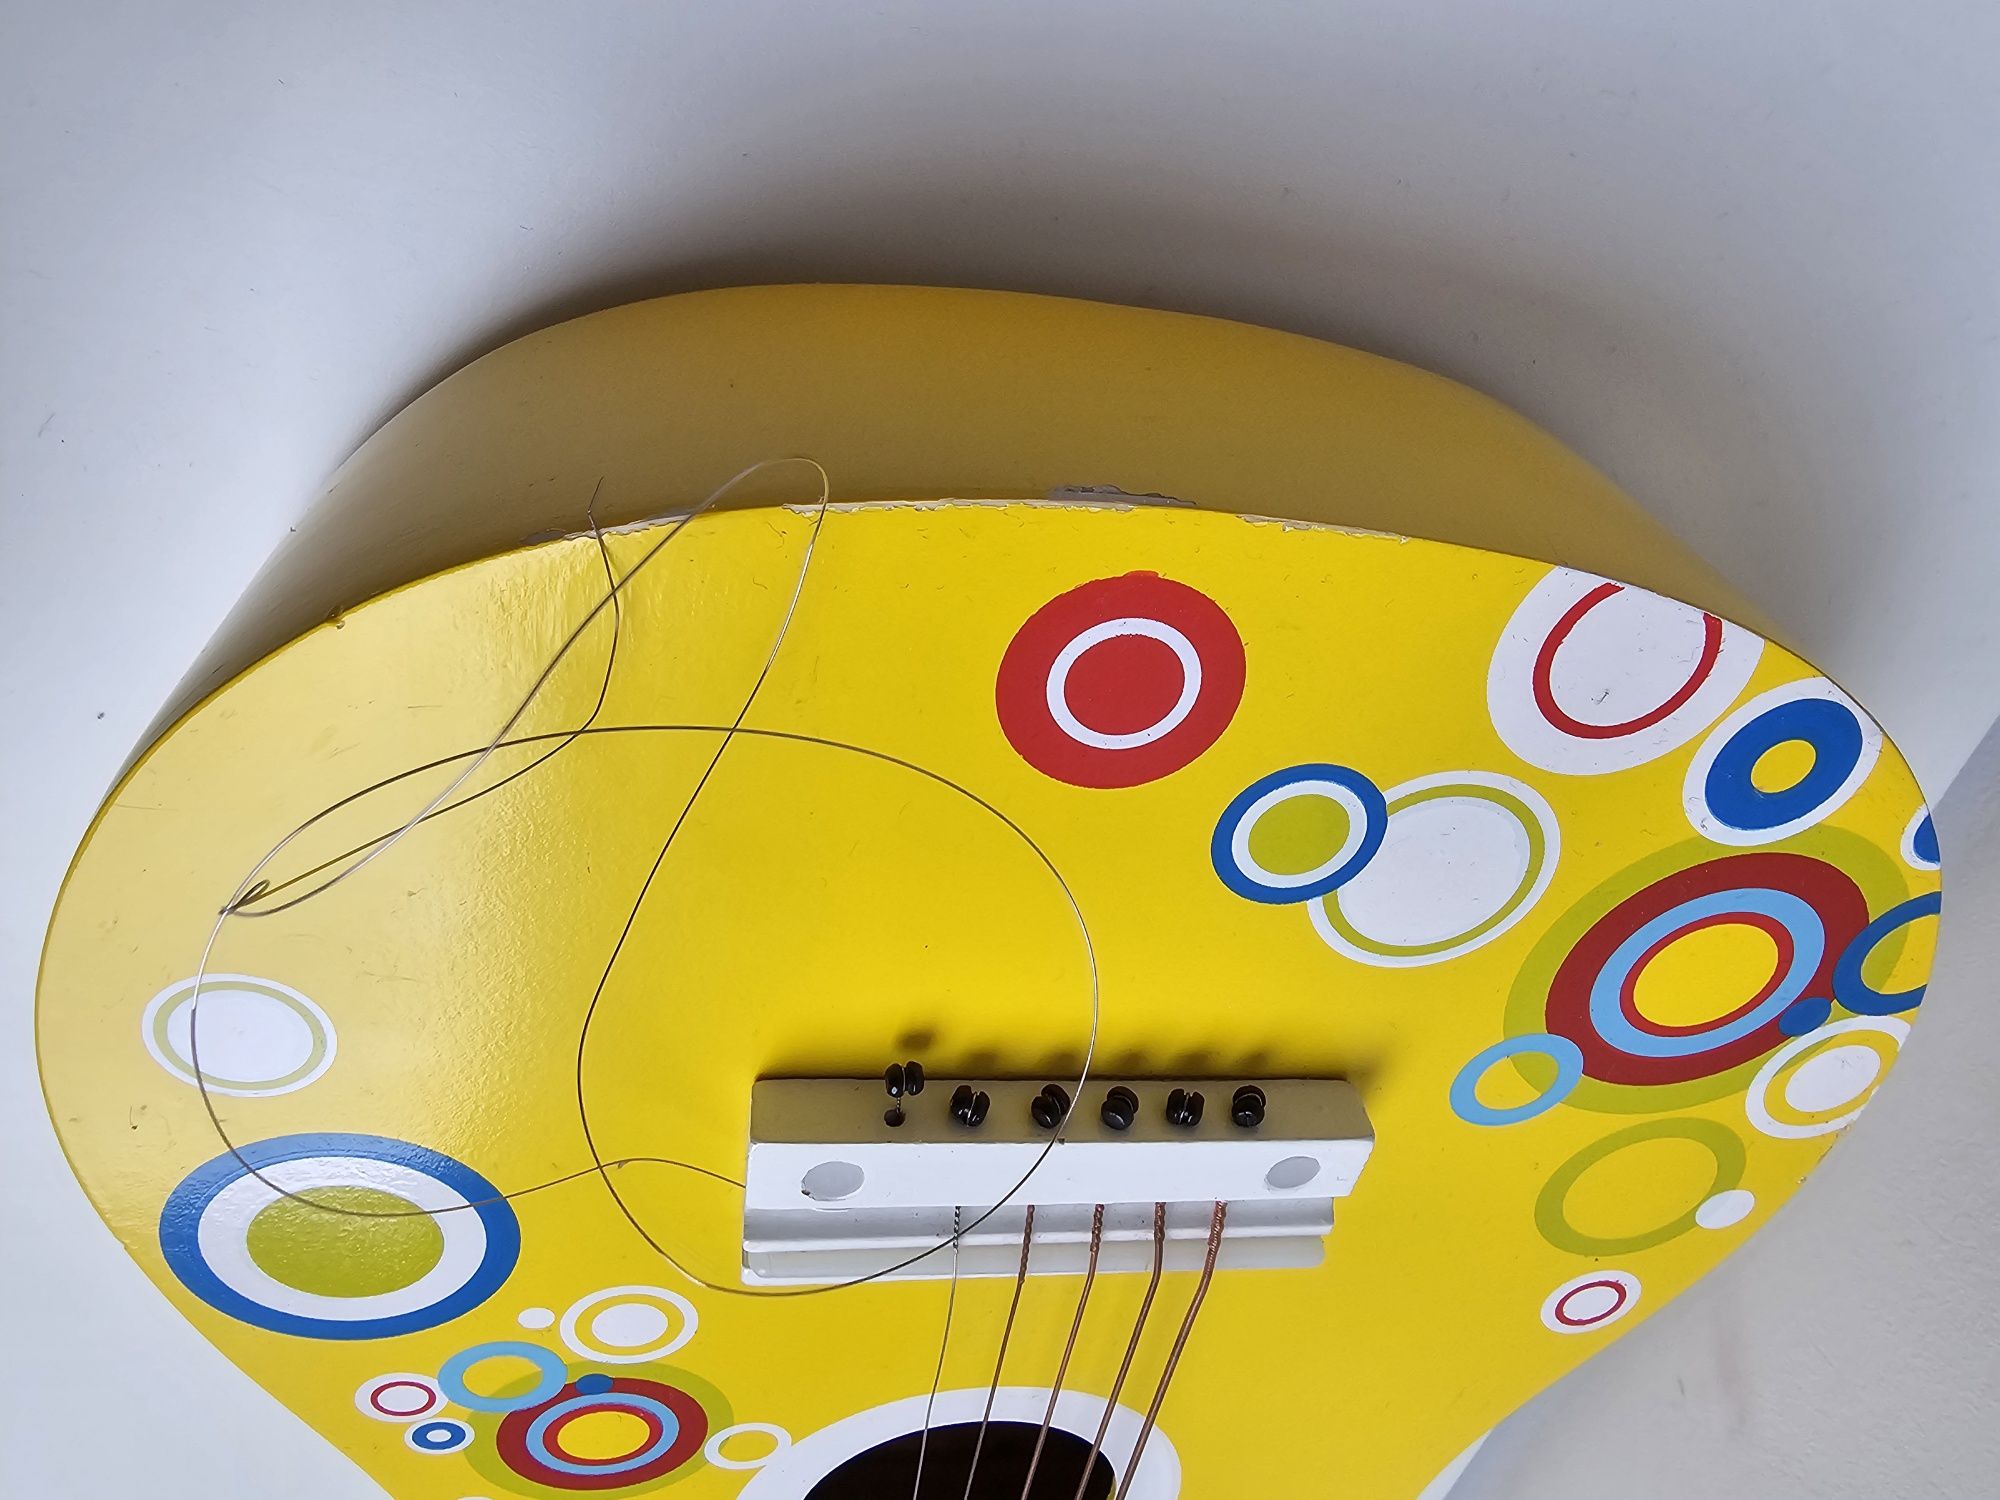 Drewniana gitara dla dzieci marki Lelin

Uwaga: 1 struna do wymiany i